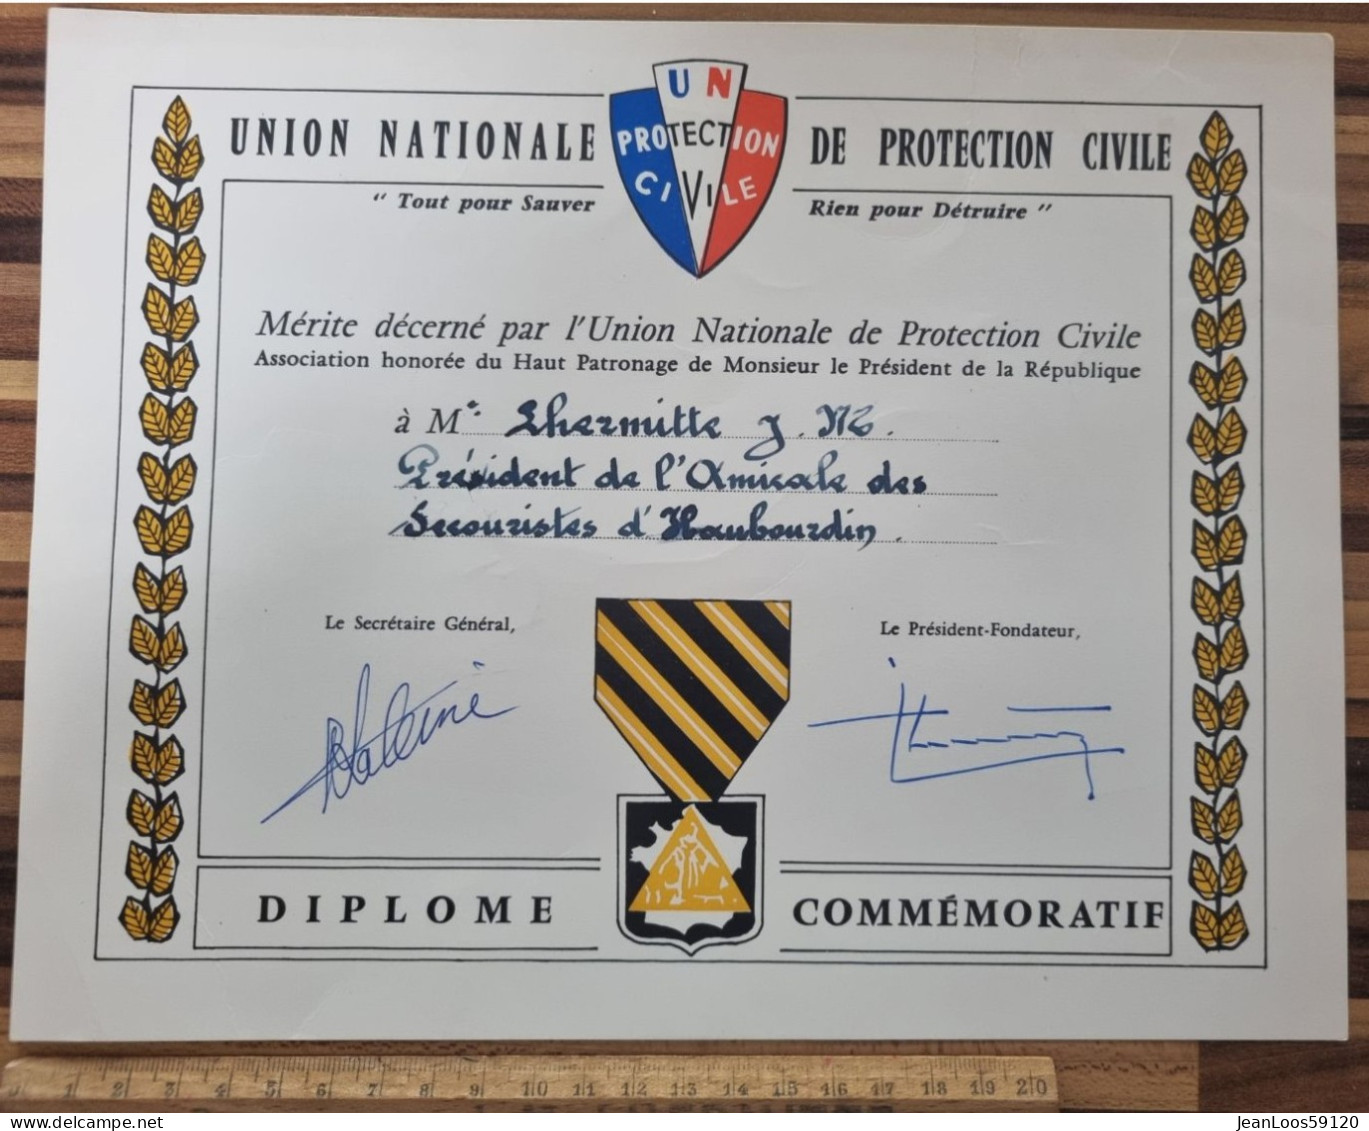 Diplome De Secouriste De La Protection Civile 1980 - Ministère De L'intérieur - Service National - Etabli à Haubourdin - Cartes De Membre